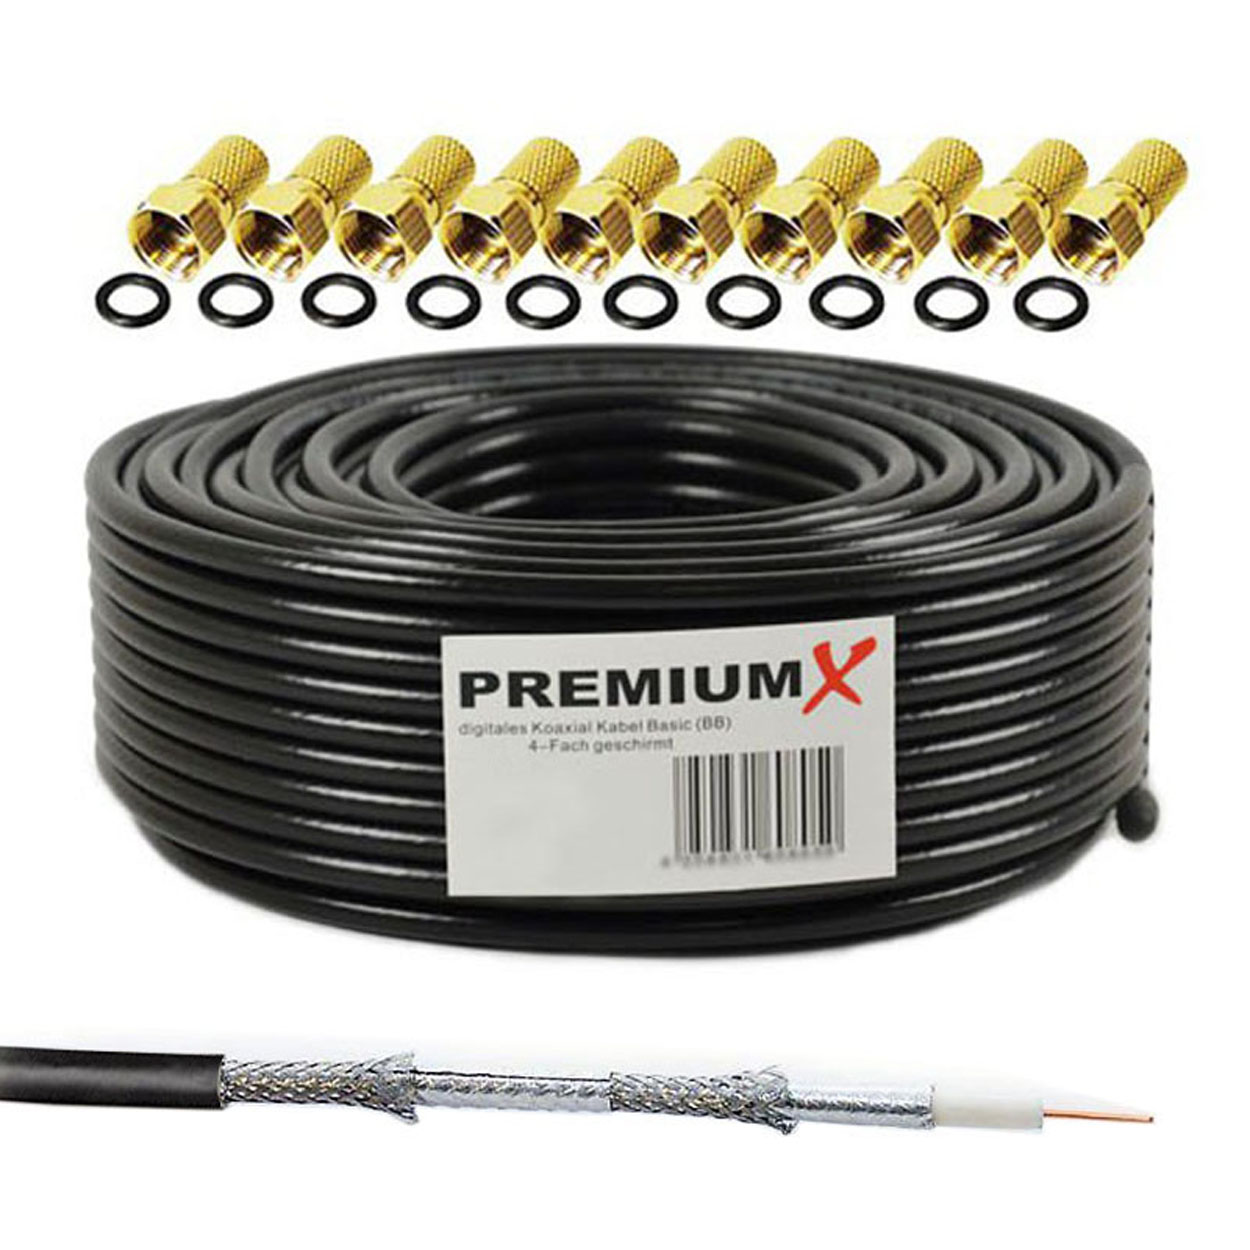 PREMIUMX 25m BASIC Koaxialkabel 135dB F-Stecker 4-fach schwarz Kabel 10x SAT Antennenkabel